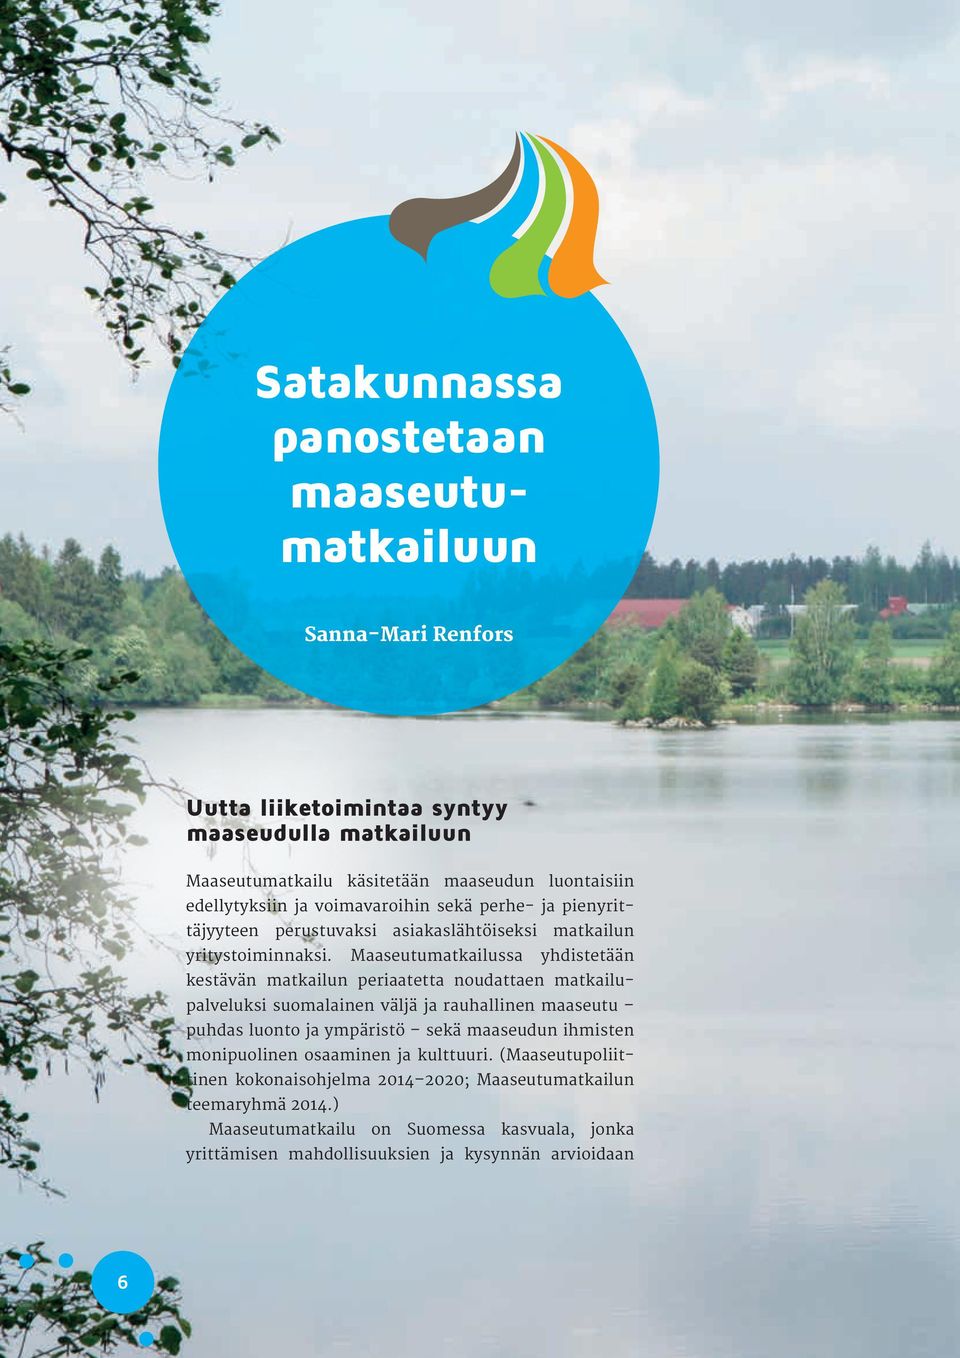 Maaseutumatkailussa yhdistetään kestävän matkailun periaatetta noudattaen matkailupalveluksi suomalainen väljä ja rauhallinen maaseutu puhdas luonto ja ympäristö sekä